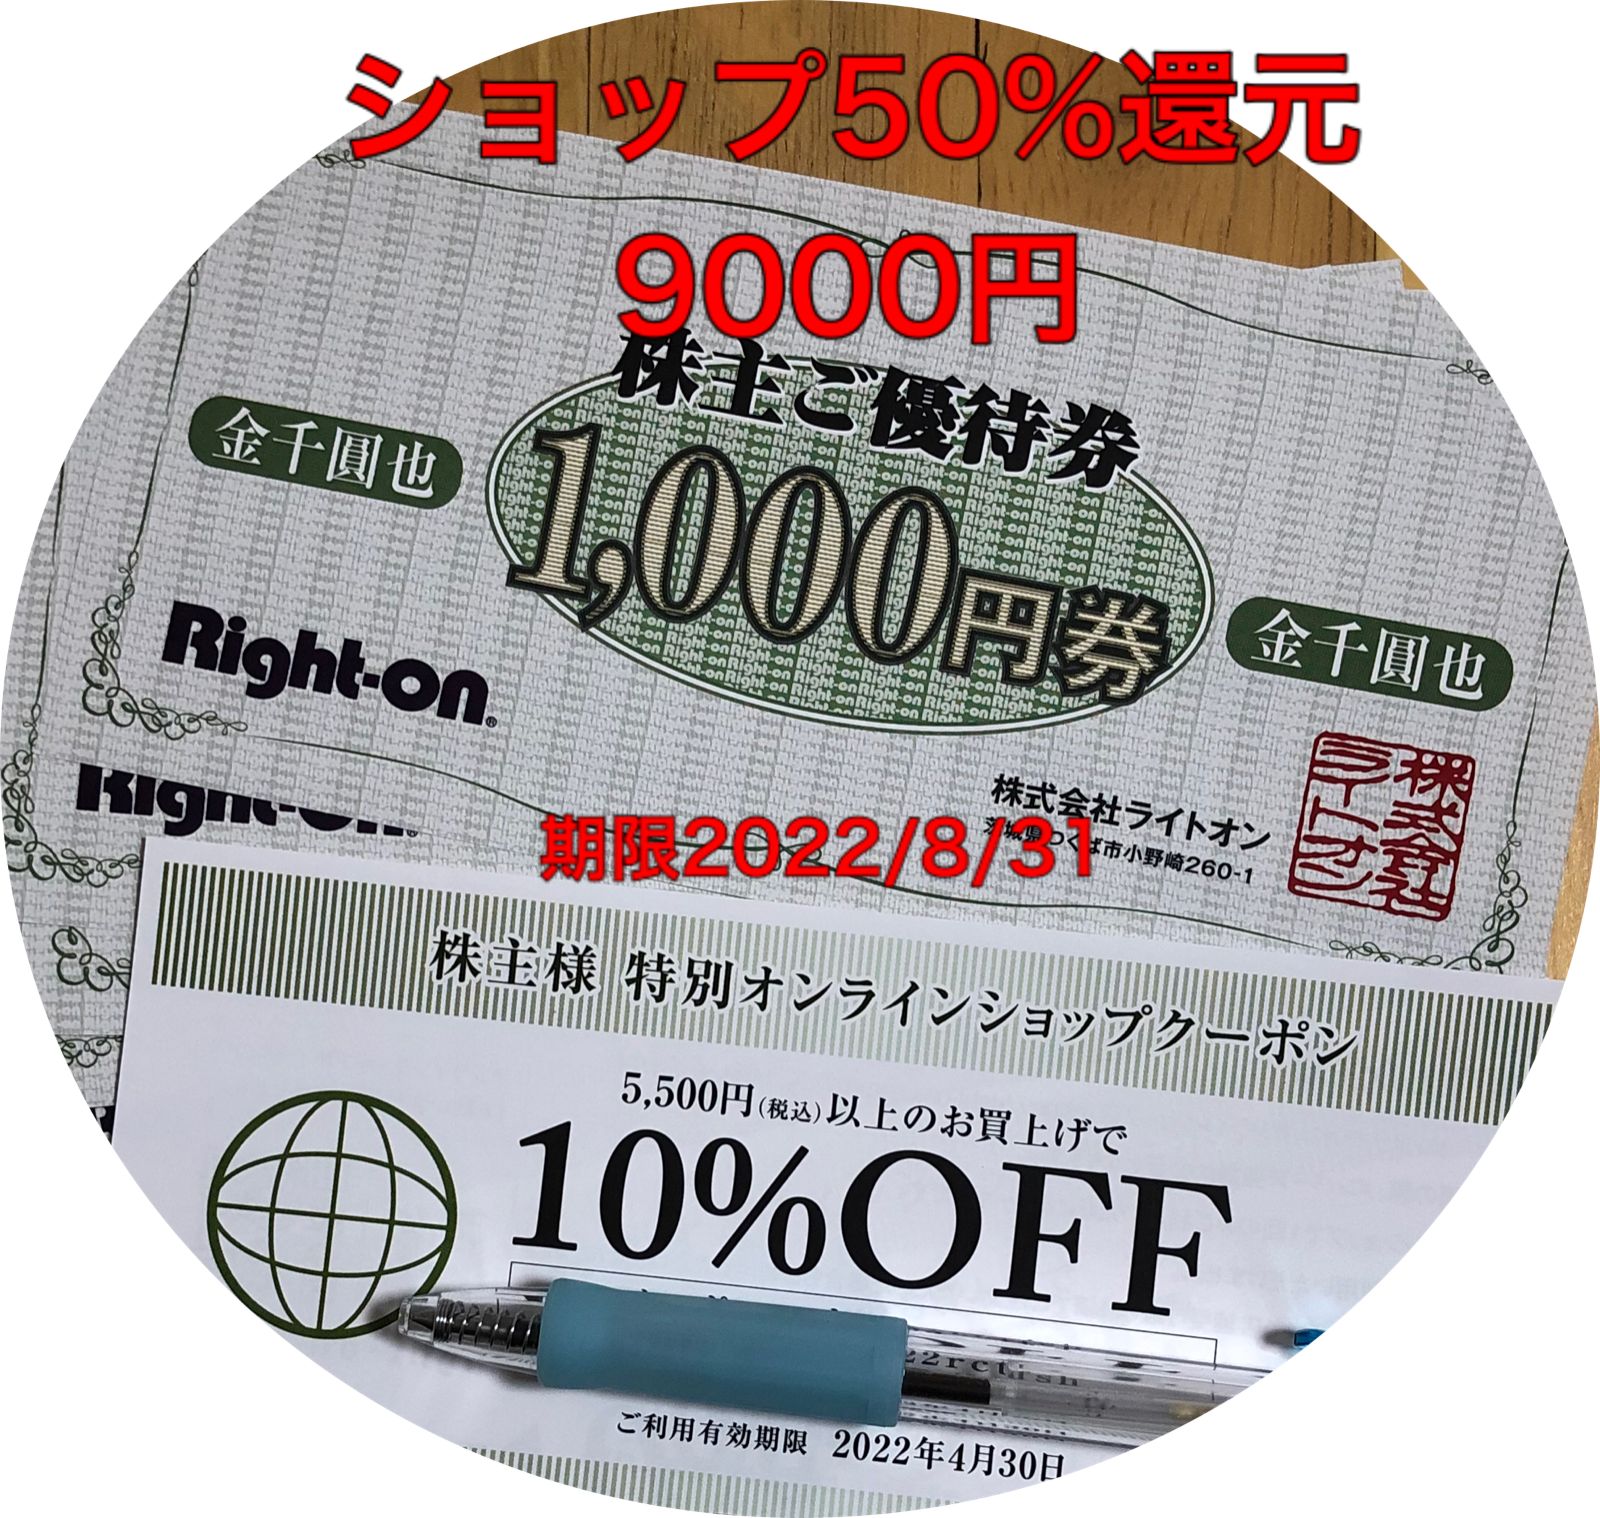 ライトオン 株主優待券 9000円分 オンラインクーポン3枚 - さすけ ...